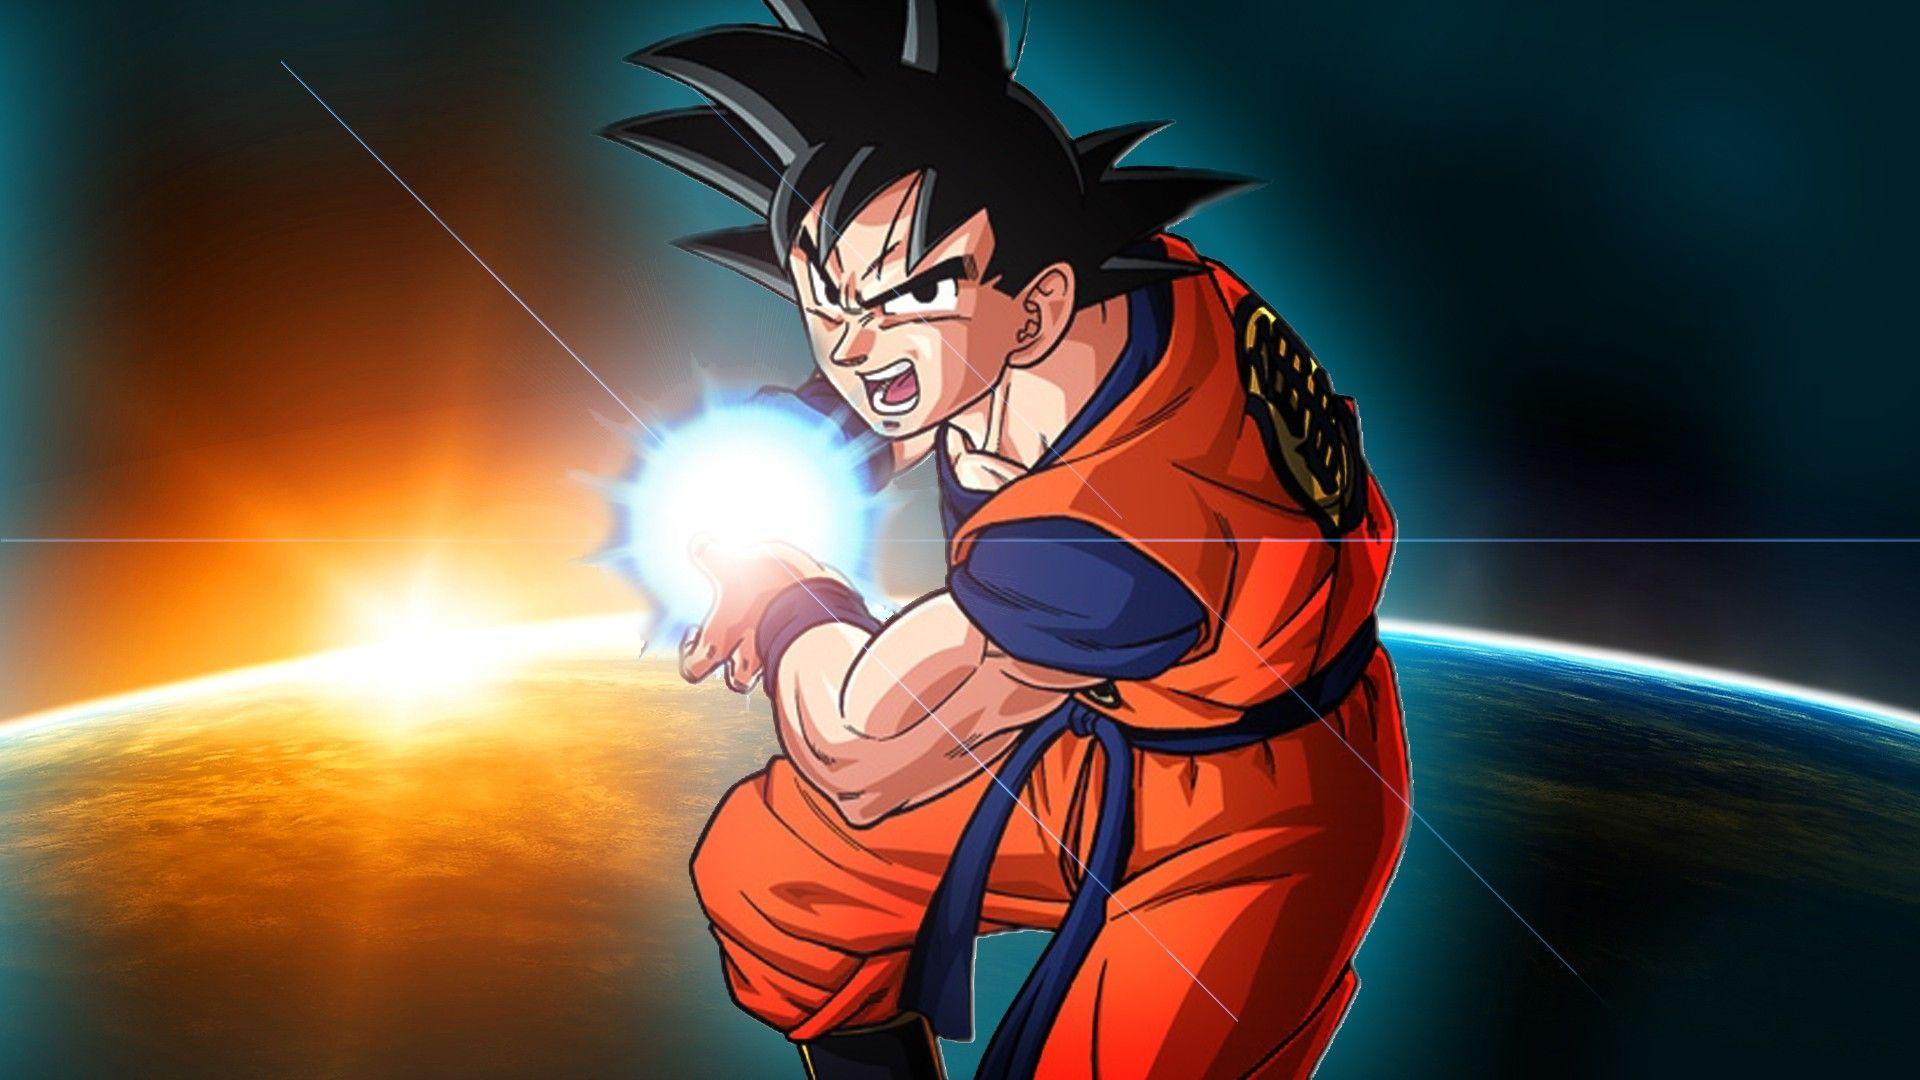 Son Goku Dragon Ball Z The Megadimensional Character